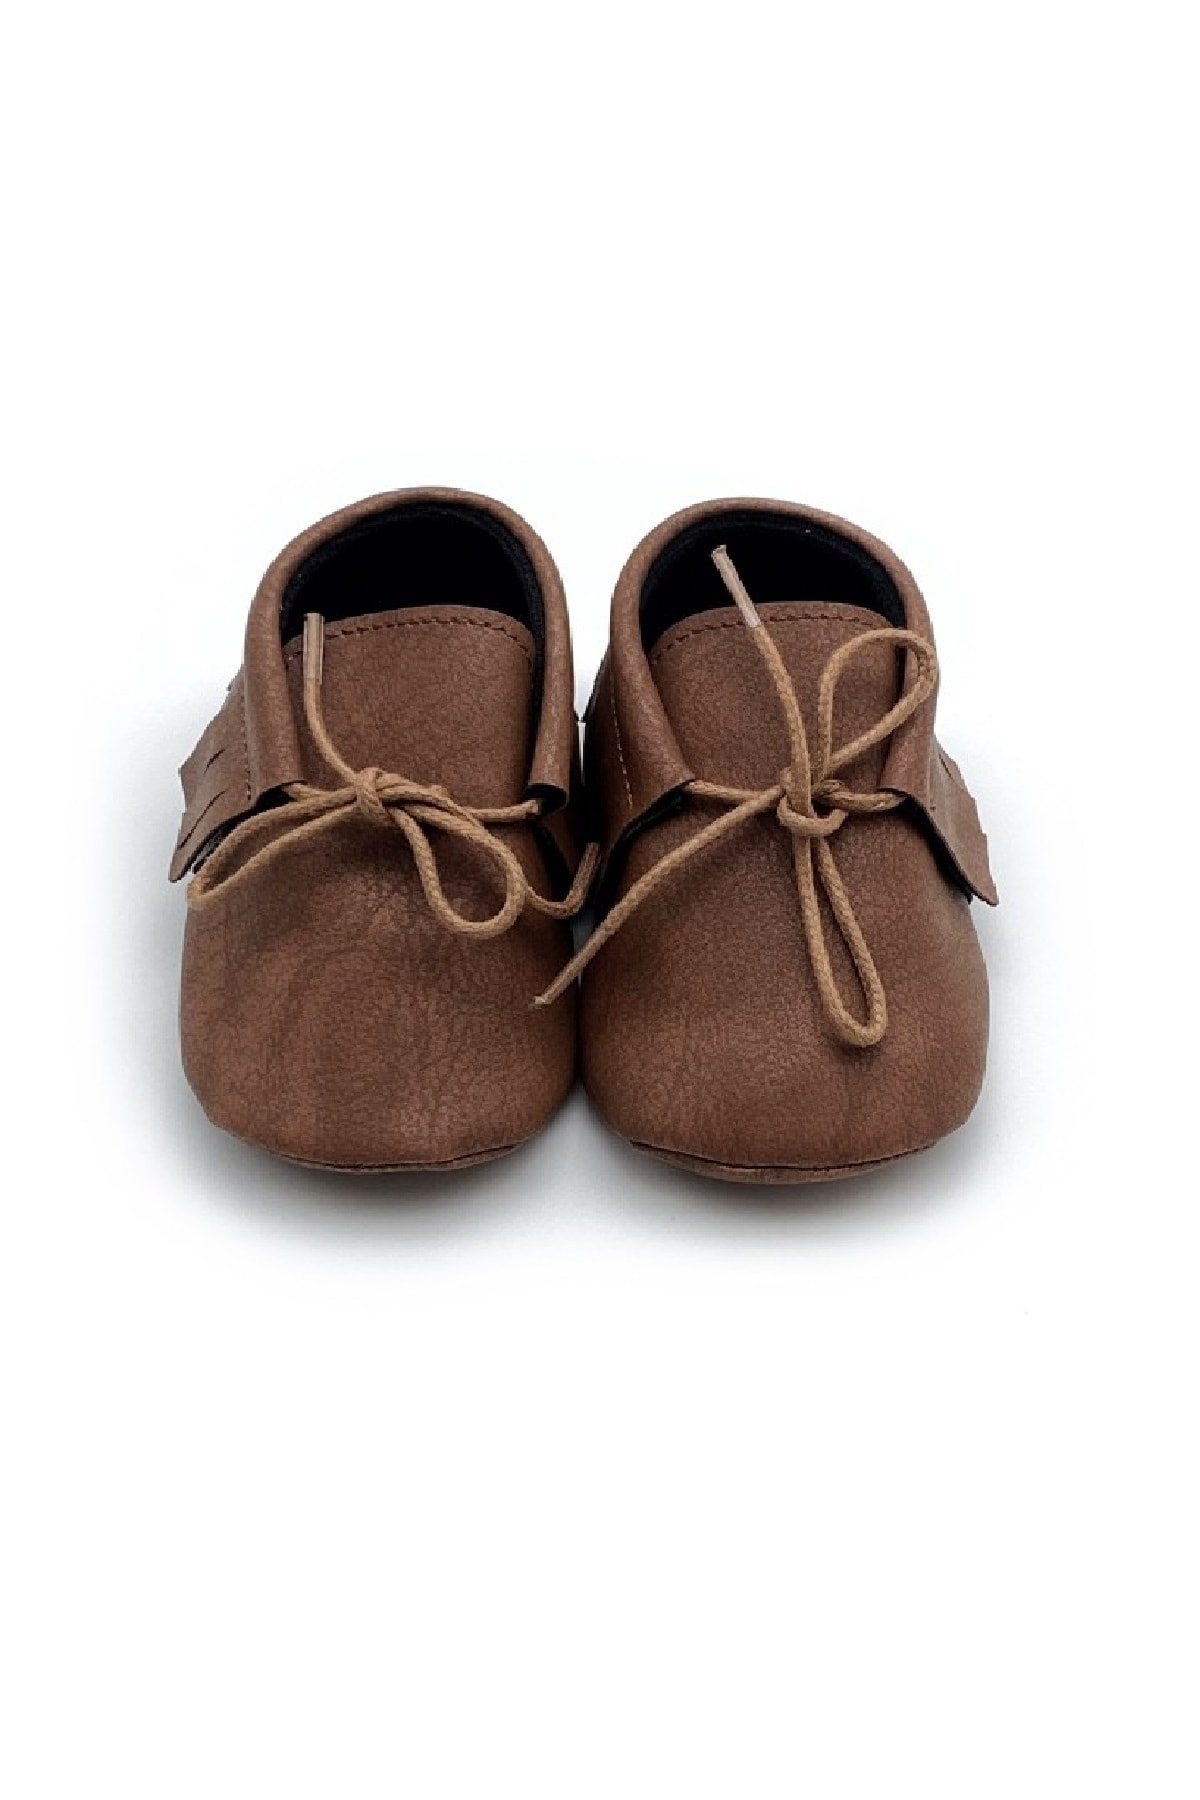 Panowill Design Erkek Kız Bebek Kahverengi El Yapımı Bağcıklı Makosen Bebek Ayakkabıları